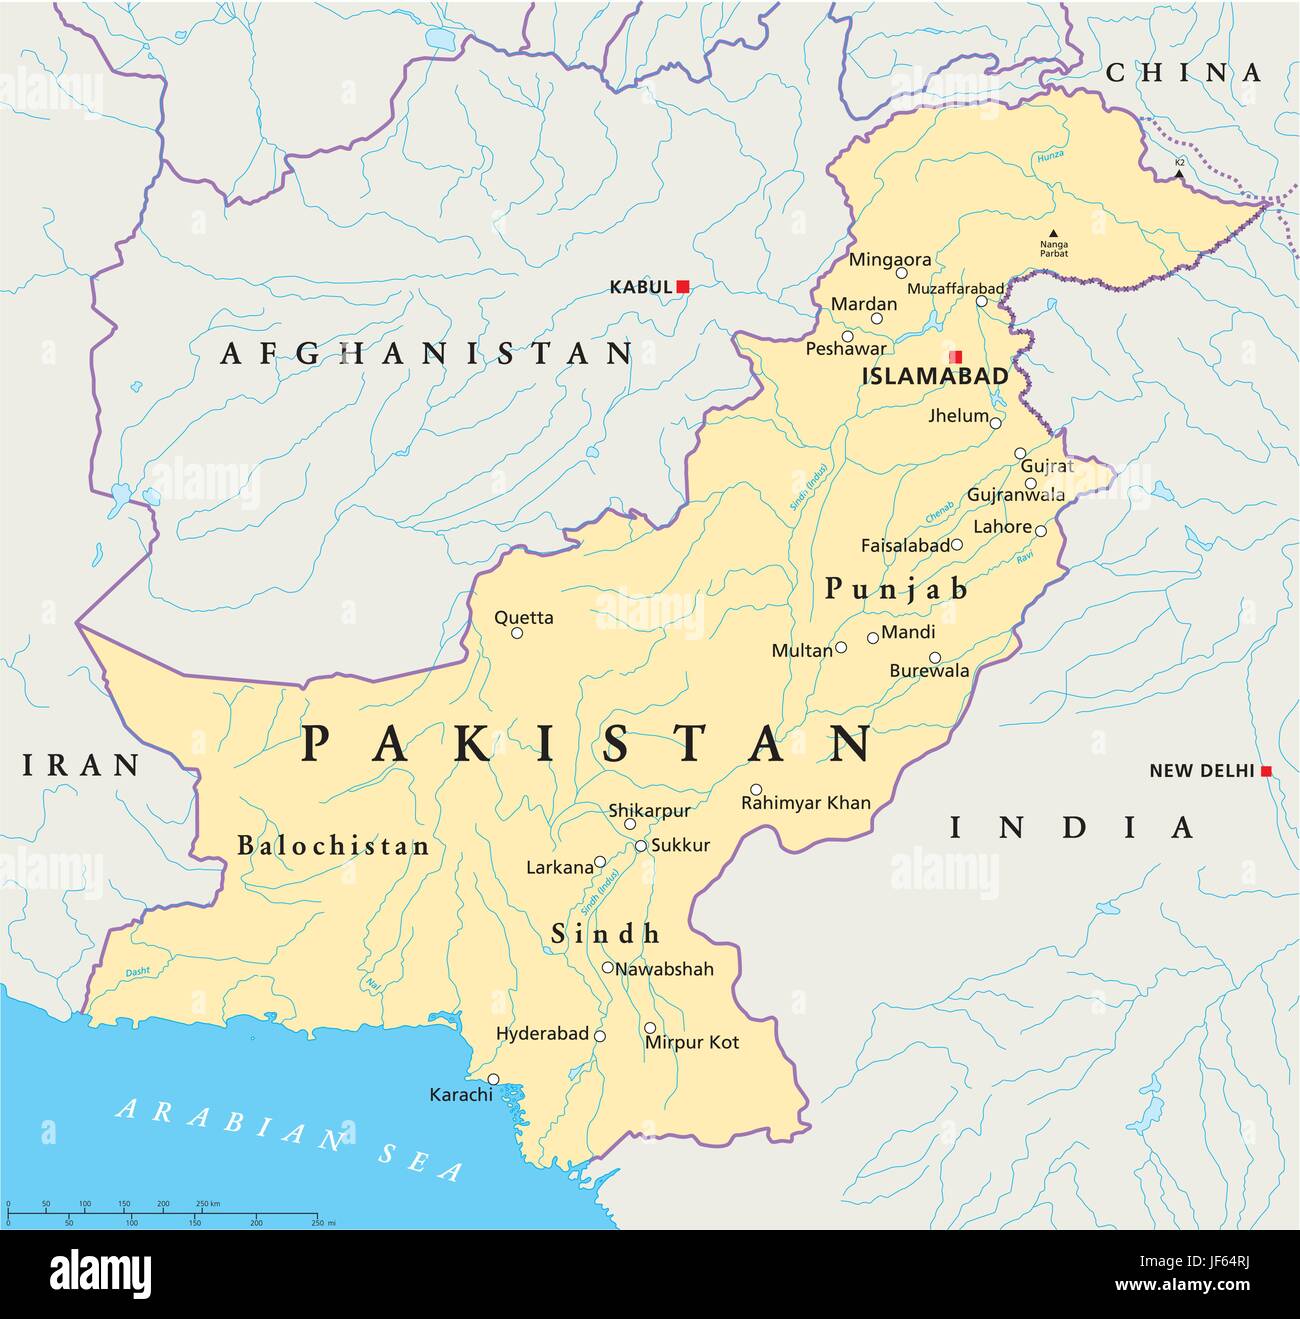 Il pakistan, mappa, Atlas, mappa del mondo, viaggi, deserto wasteland, India, Illustrazione Vettoriale